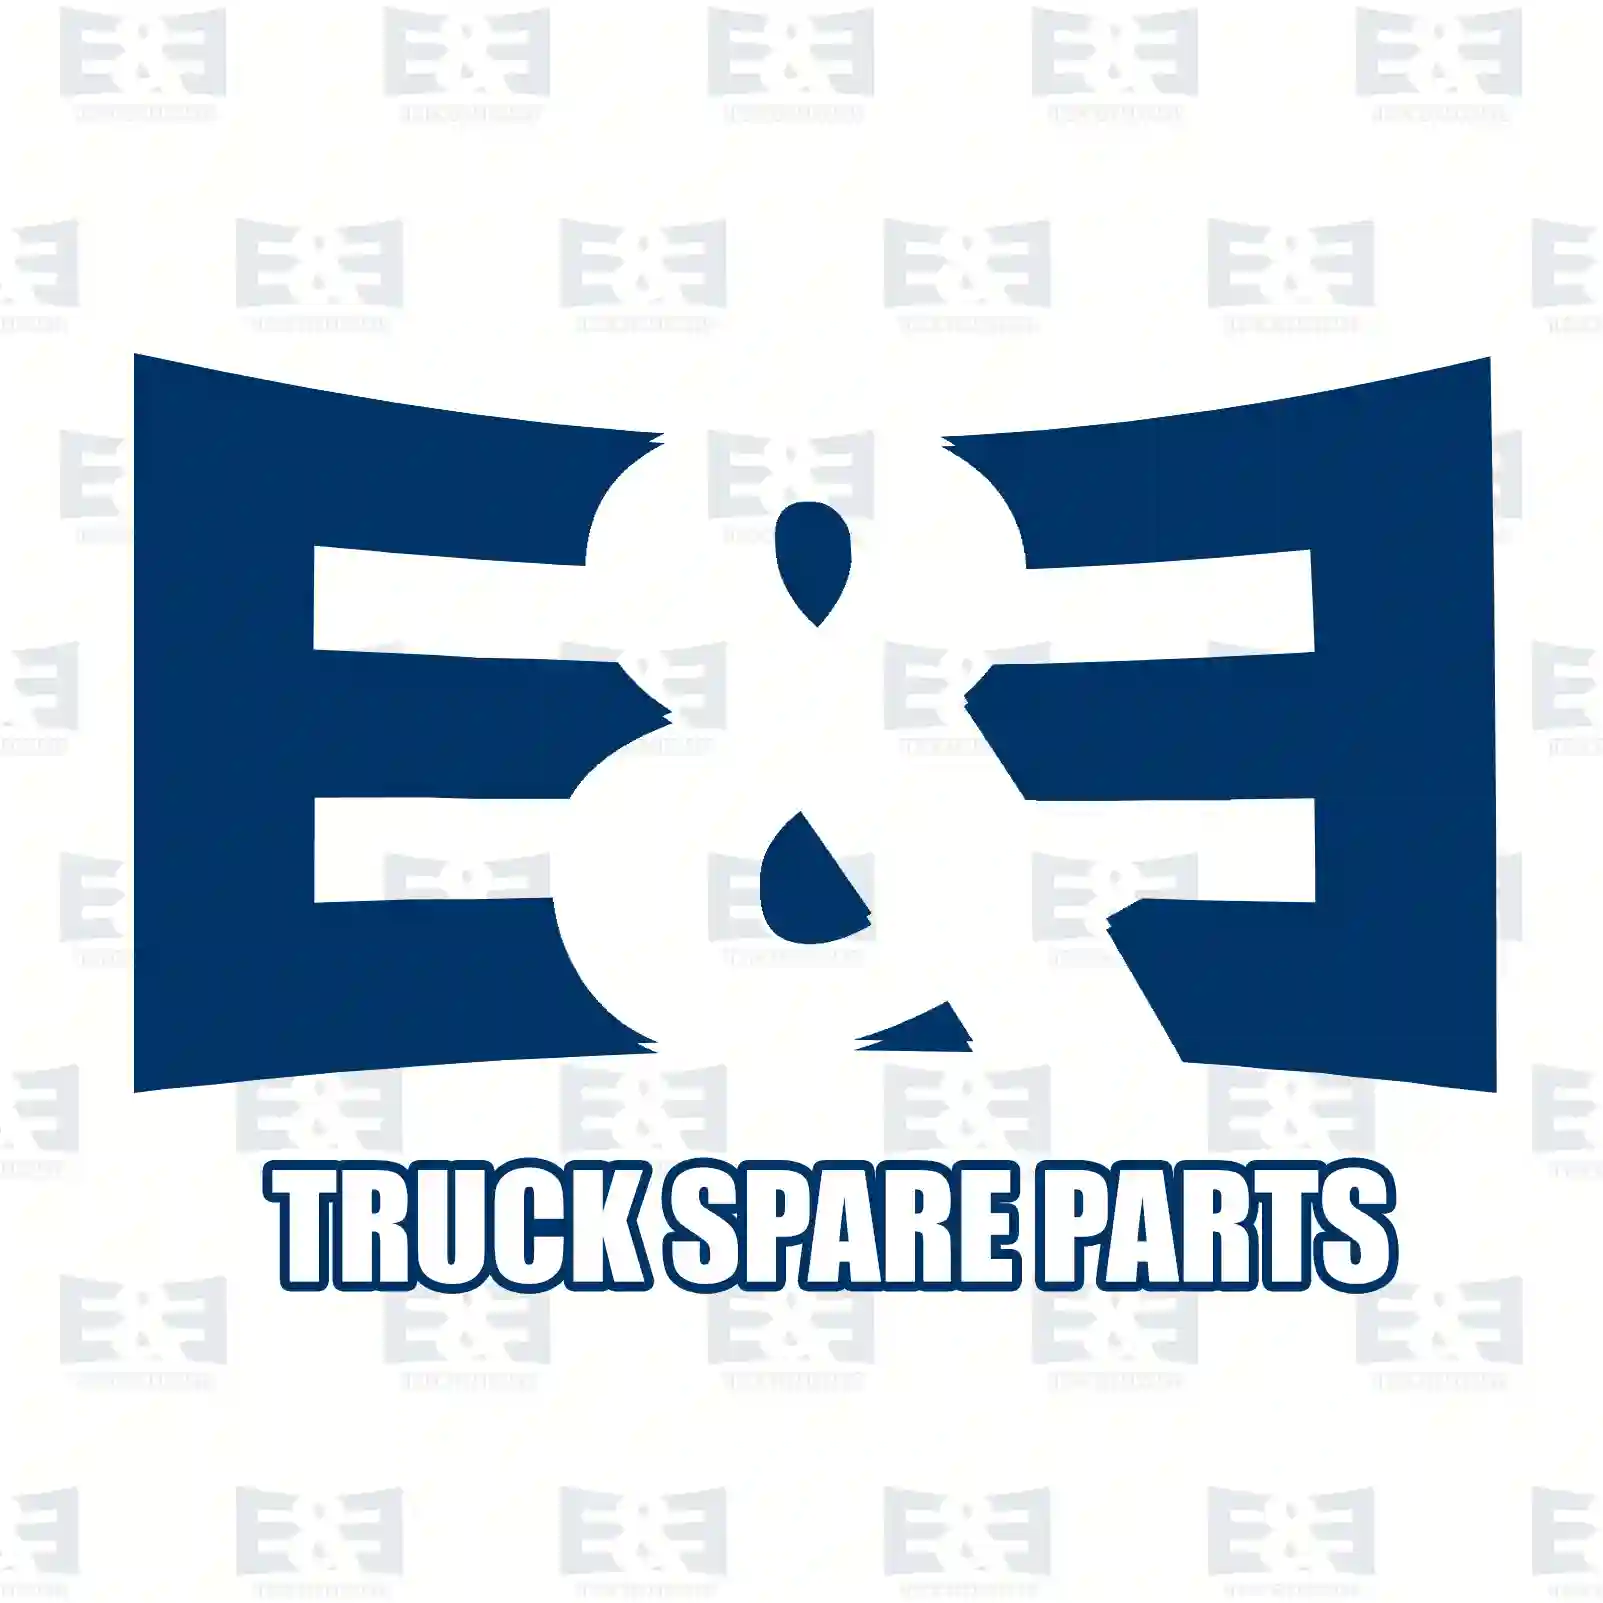 Repair kit, pressure regulator, 2E2296543, 0609955, 609955, 81521016118, 0004301107, 0015864343 ||  2E2296543 E&E Truck Spare Parts | Truck Spare Parts, Auotomotive Spare Parts Repair kit, pressure regulator, 2E2296543, 0609955, 609955, 81521016118, 0004301107, 0015864343 ||  2E2296543 E&E Truck Spare Parts | Truck Spare Parts, Auotomotive Spare Parts